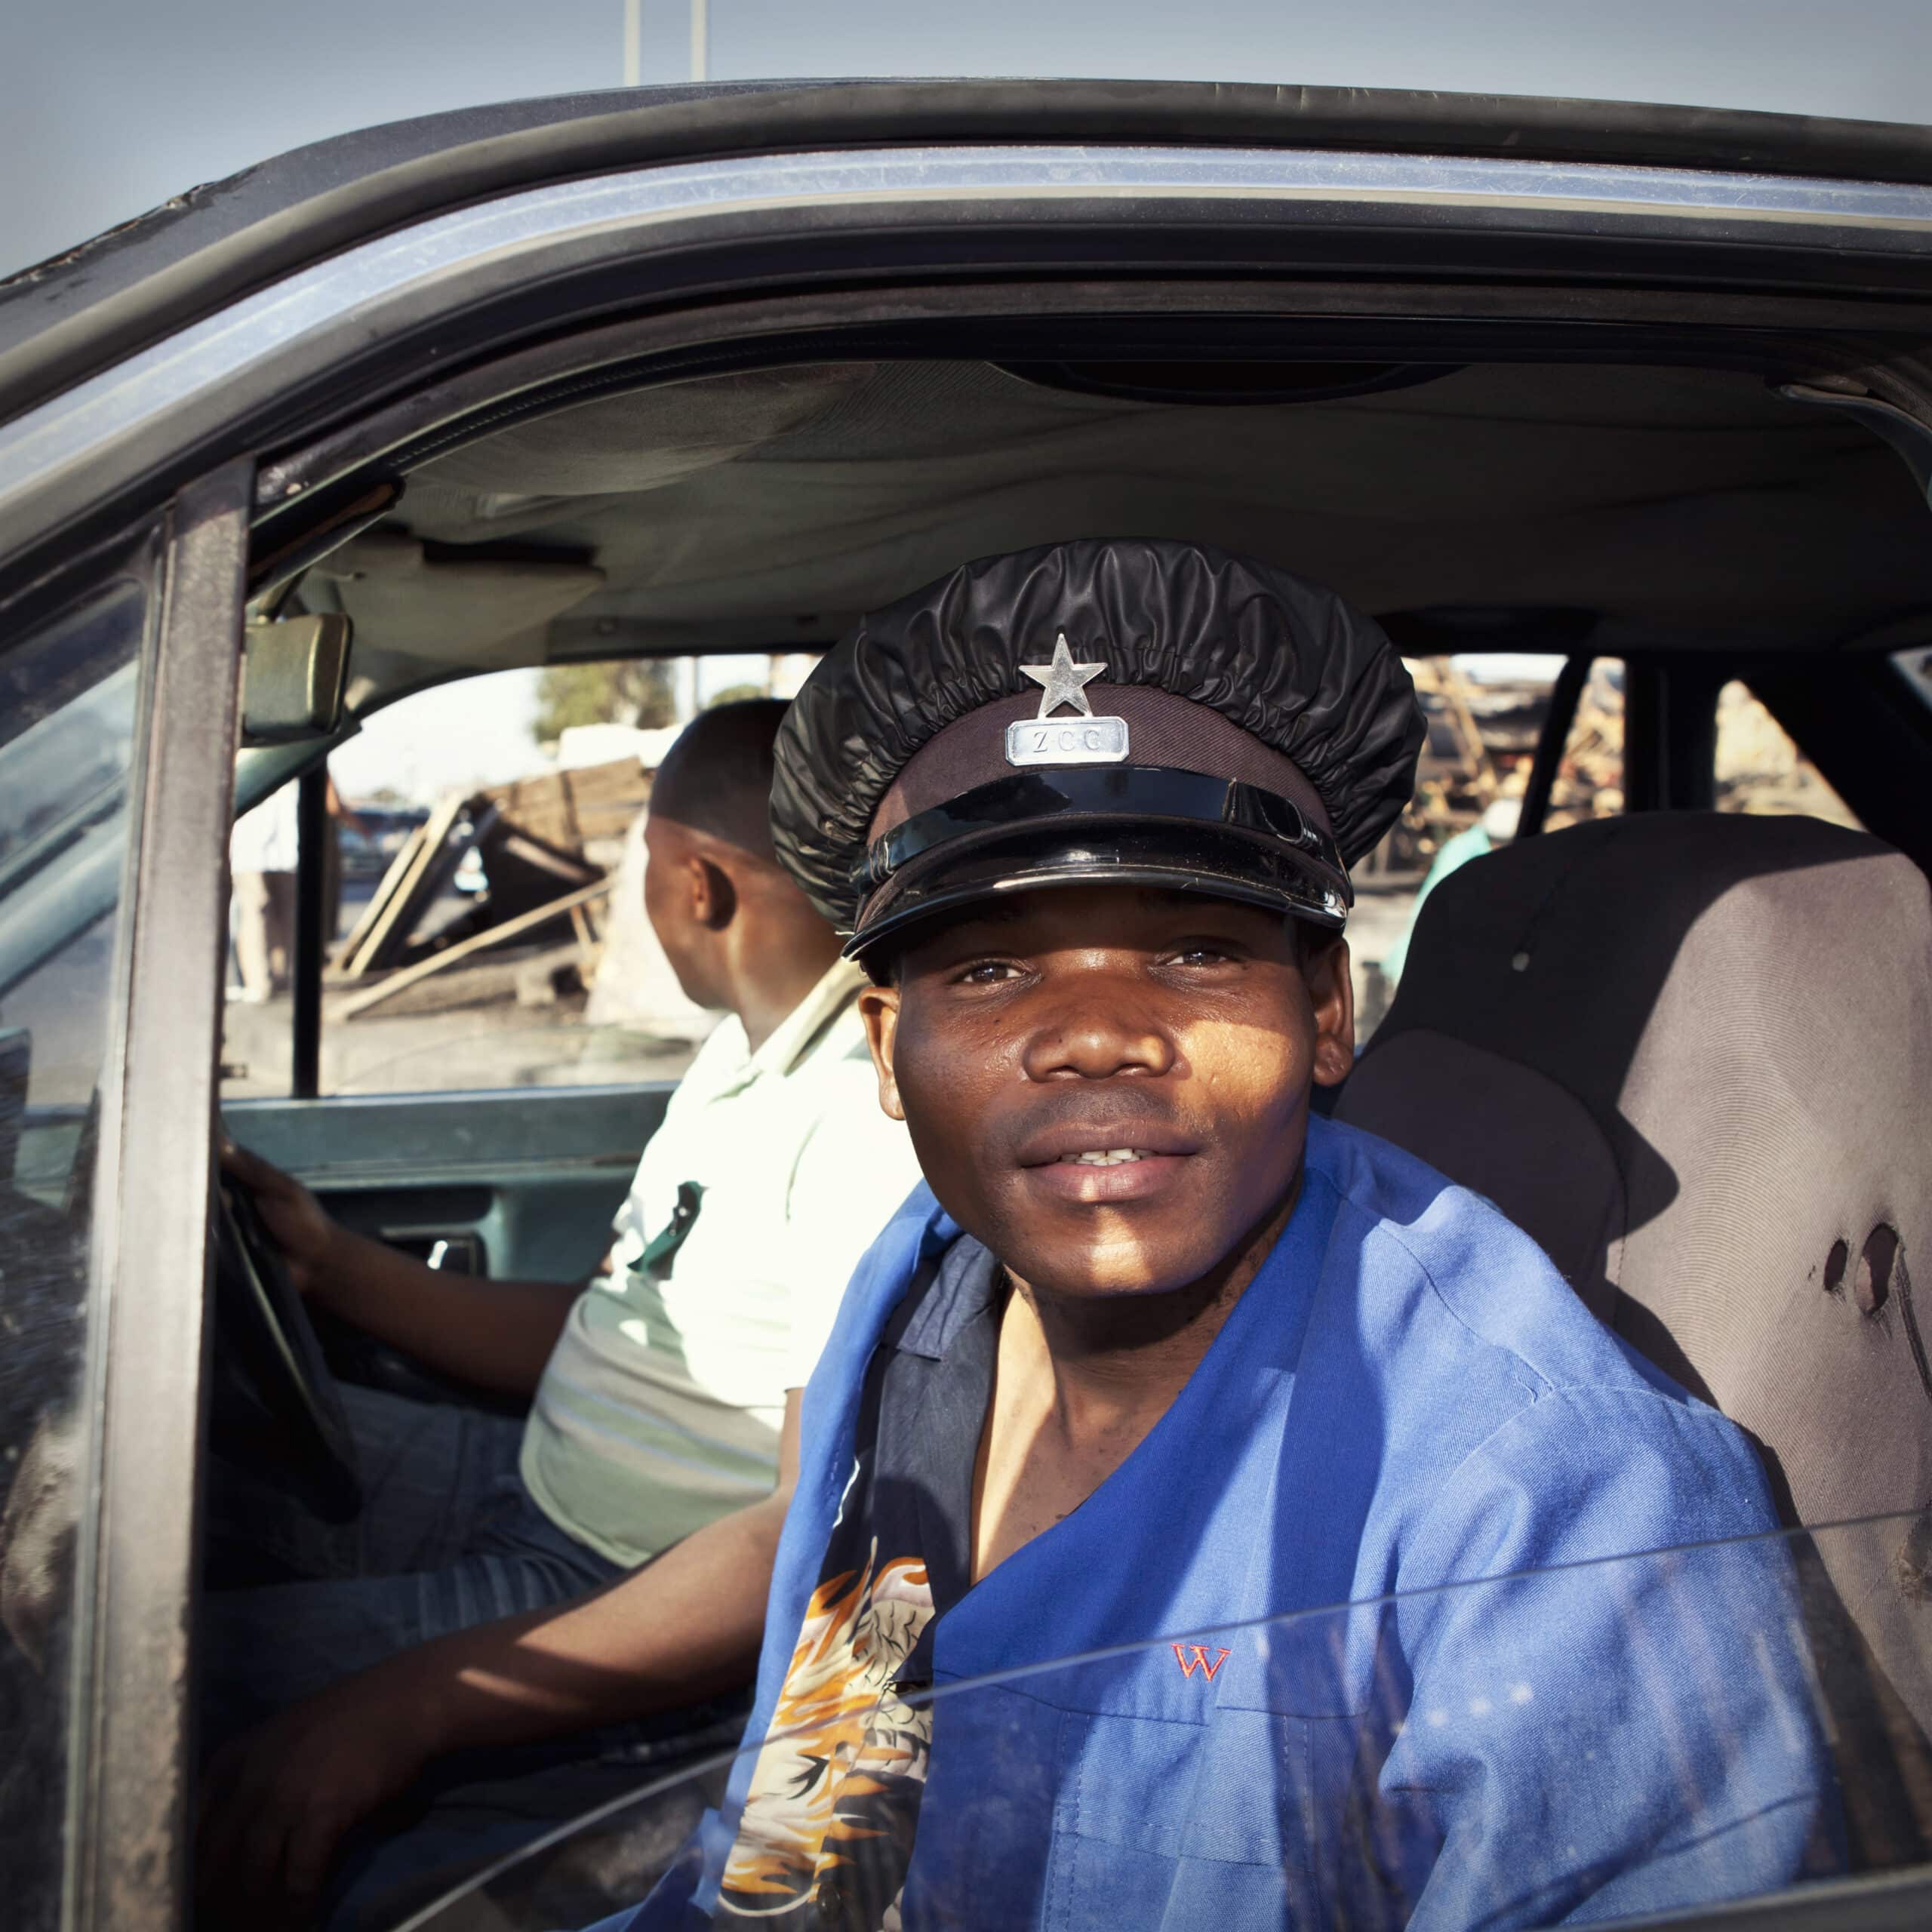 Ein Mann in einem blauen Arbeitshemd und einer schwarzen Polizeimütze sitzt auf dem Fahrersitz eines verwitterten Fahrzeugs und lächelt in einer sonnigen Umgebung in die Kamera. © Fotografie Tomas Rodriguez